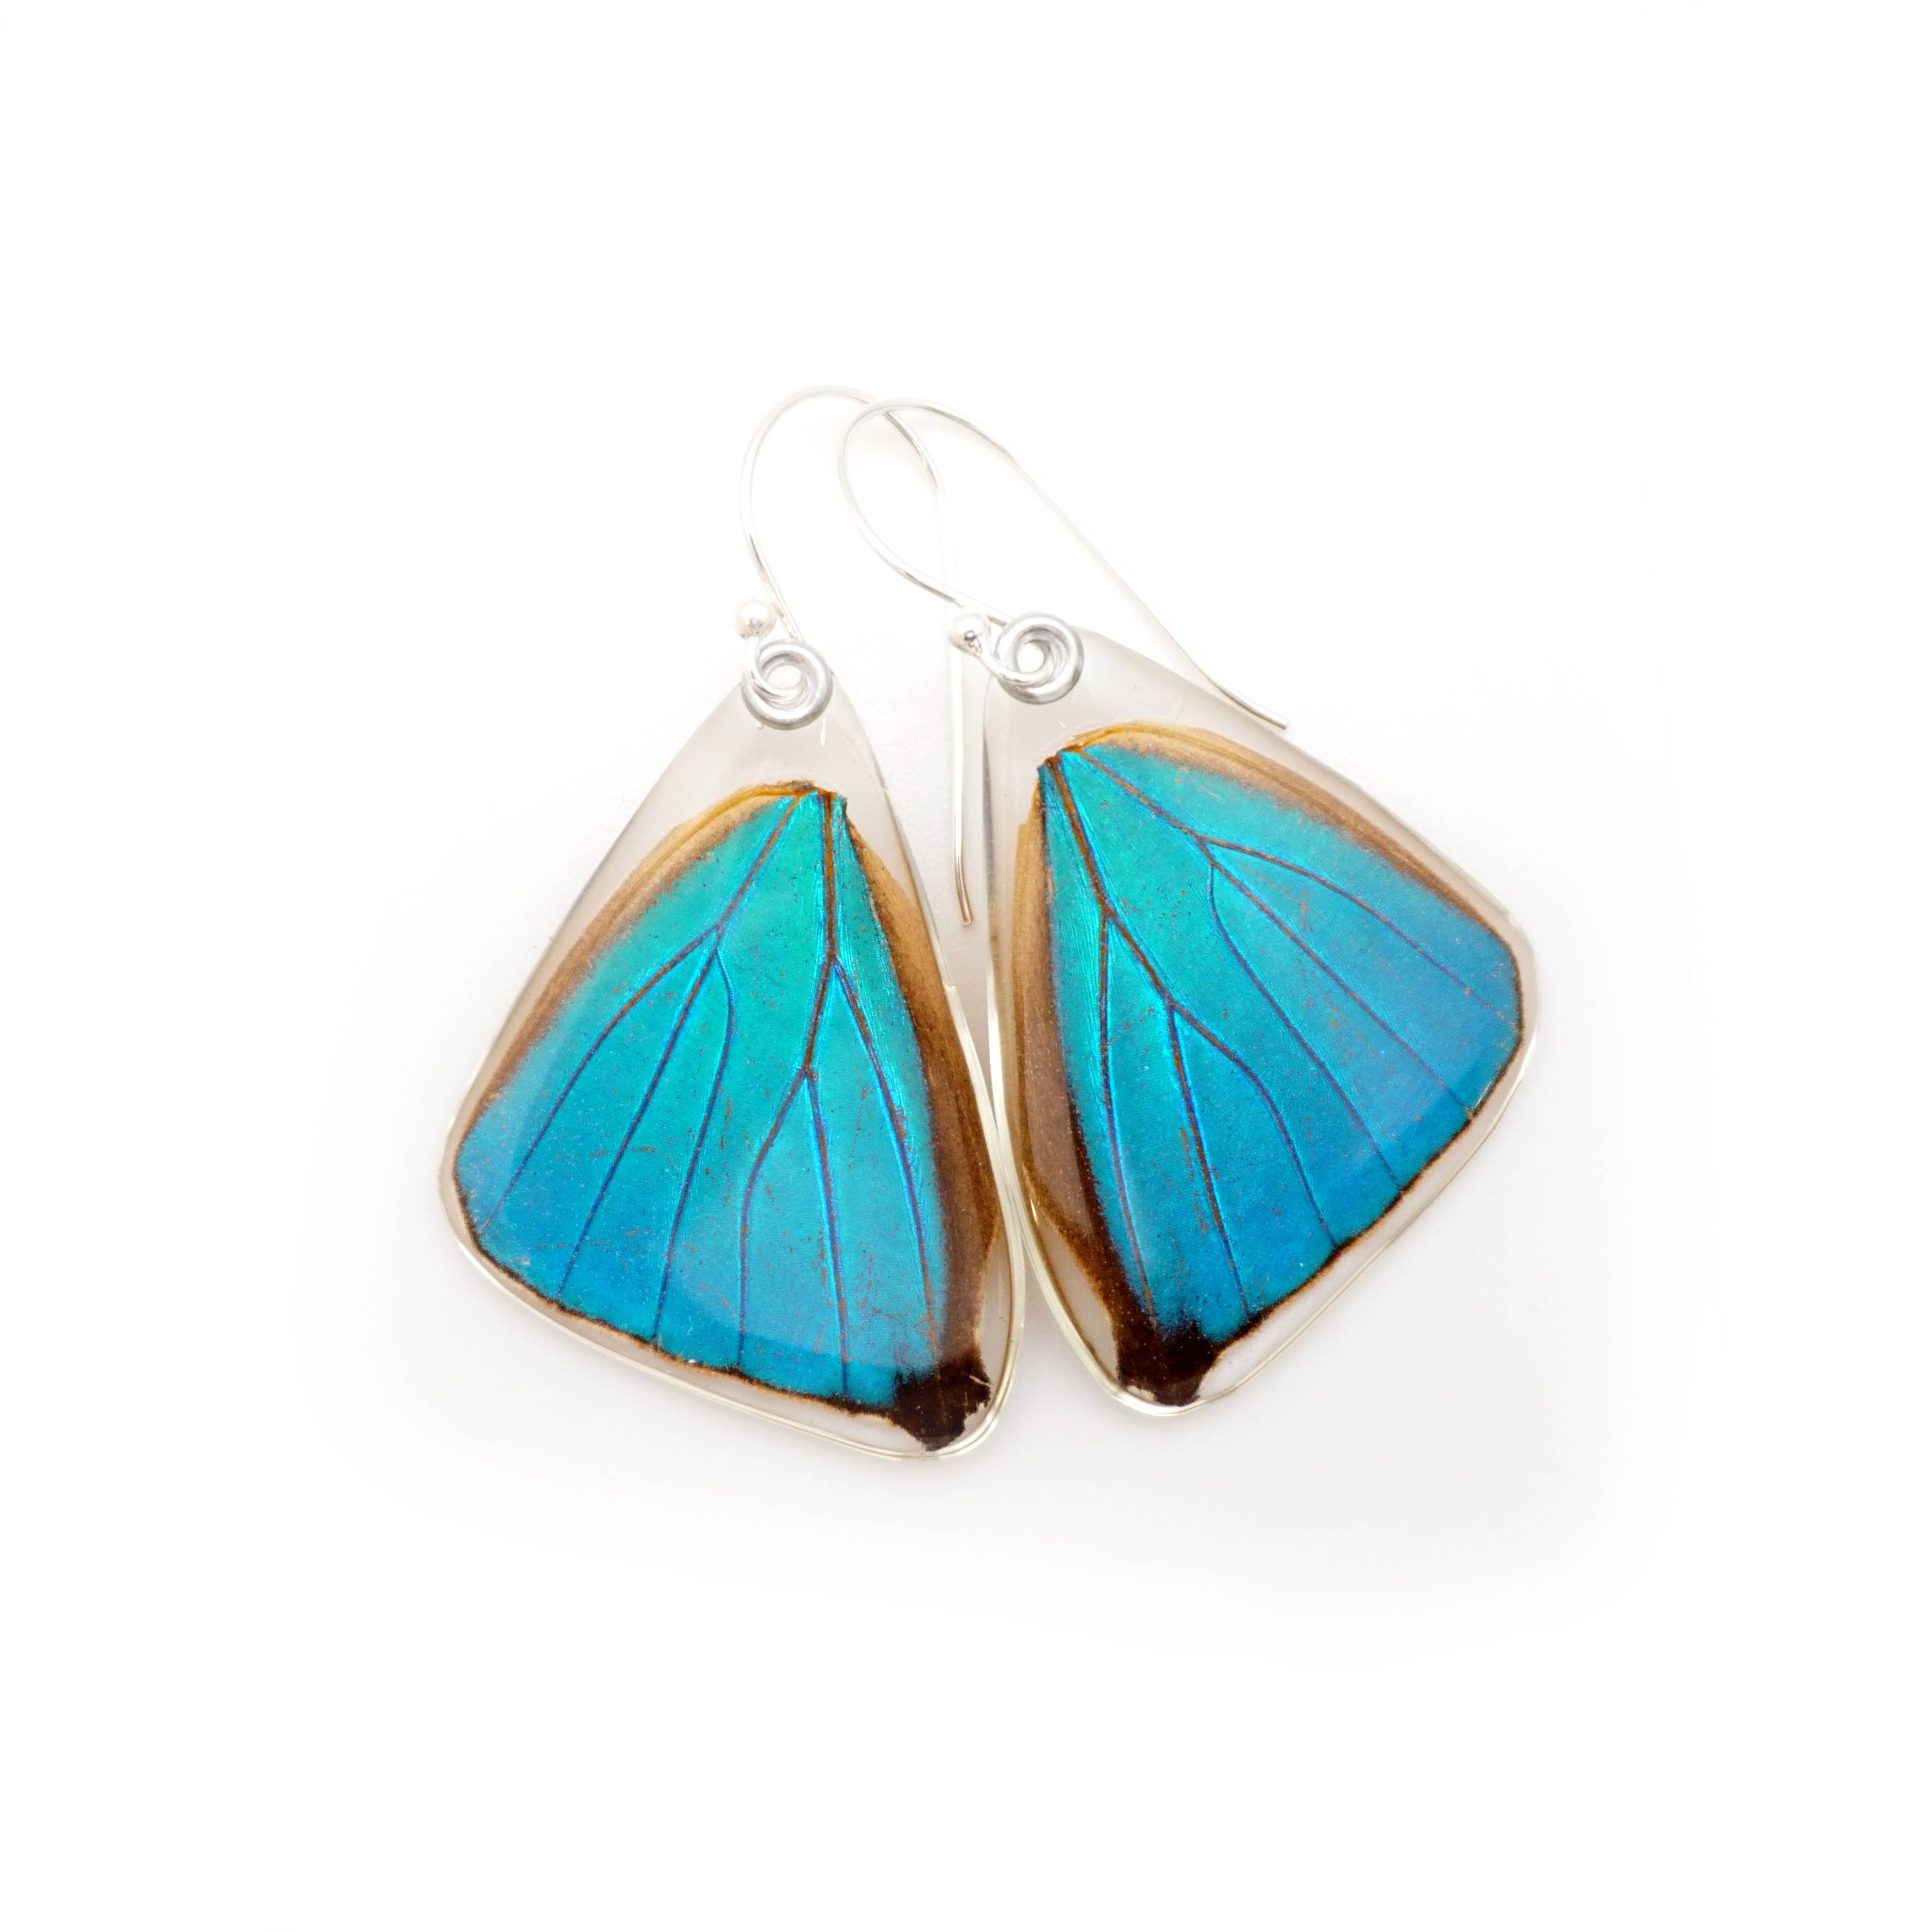 Lilac butterfly earrings Boho butterfly hoops Clay handmade earrings. Long dangle butterfly earrings